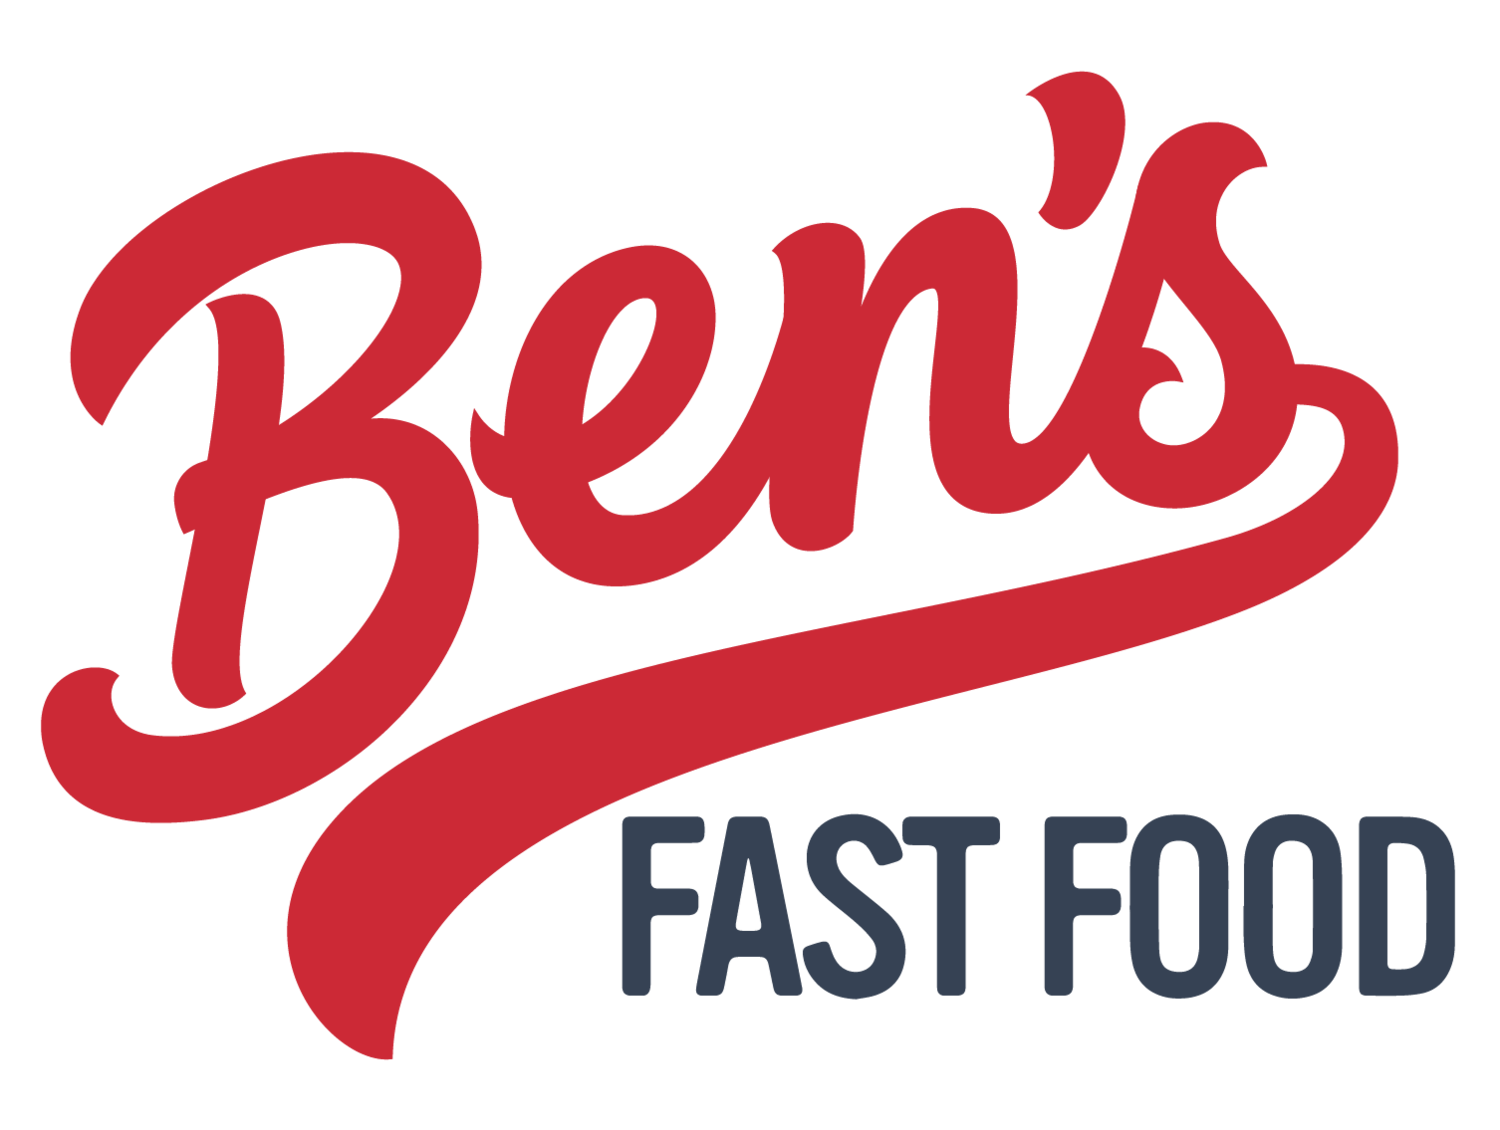 Ben’s Fast Food